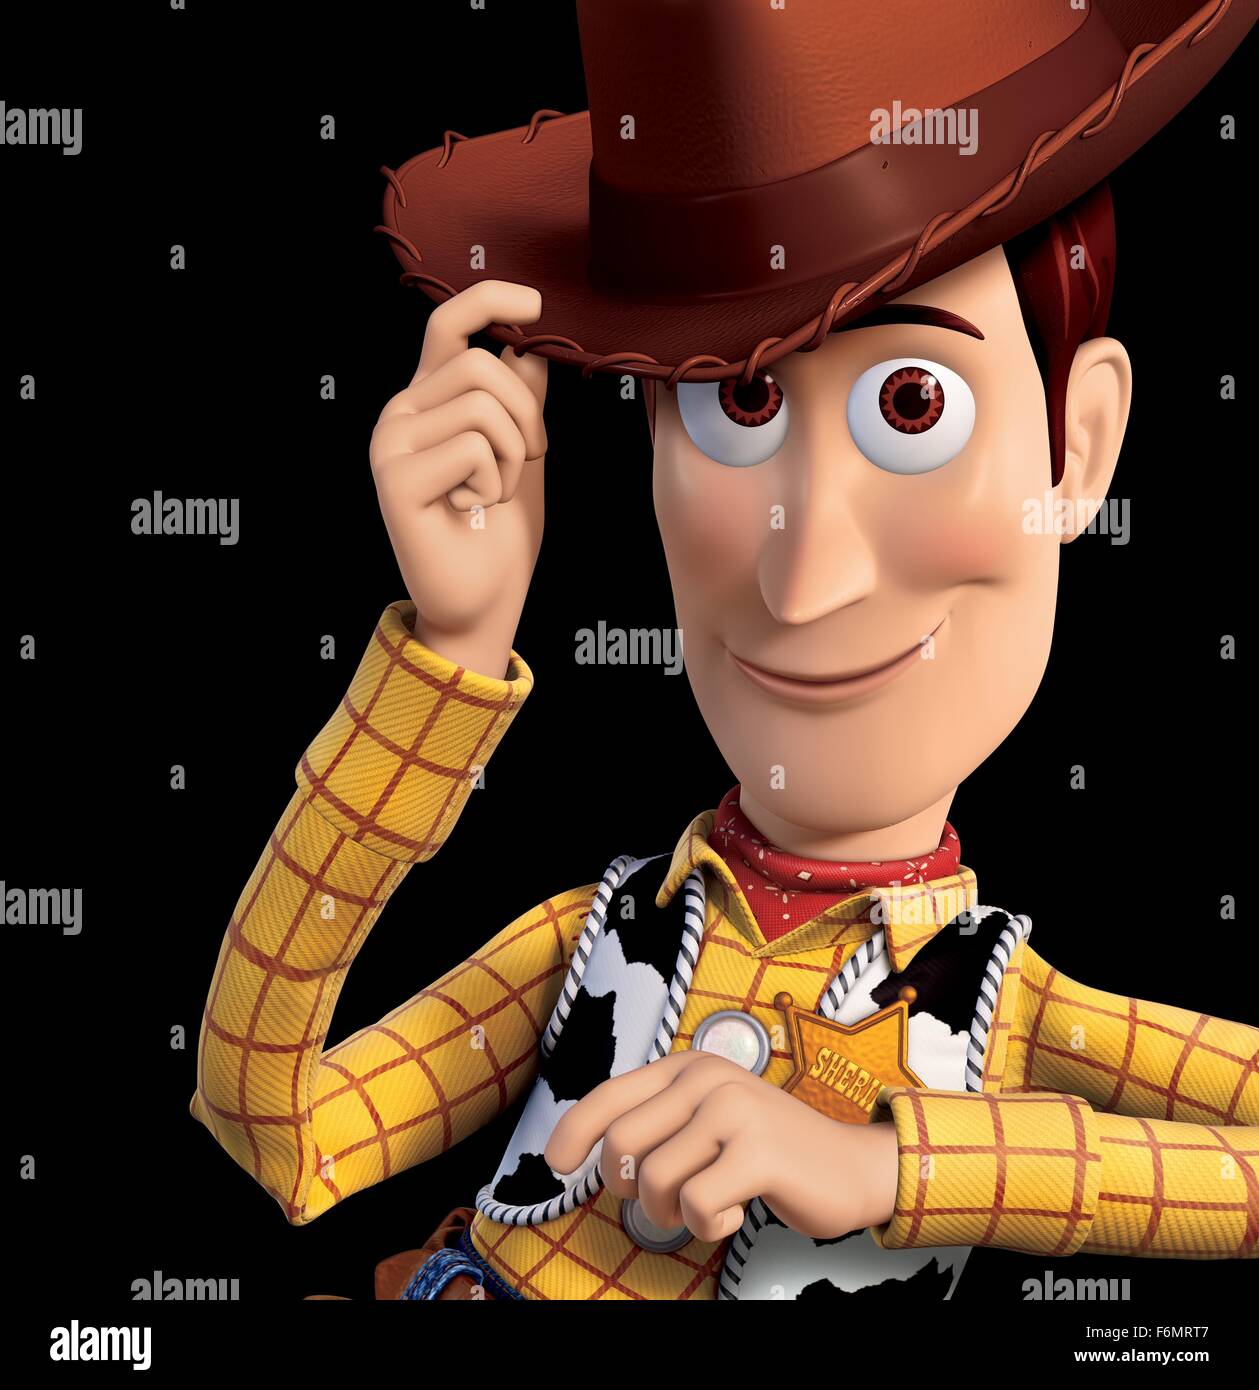 Fecha de lanzamiento: 18 de junio de 2010 PELÍCULA: Toy Story 3 Estudio:  Disney Pixar DIRECTOR: Lee Unkrich parcela: Woody, Buzz, y el resto de sus  amigos del cuadro de juguete se